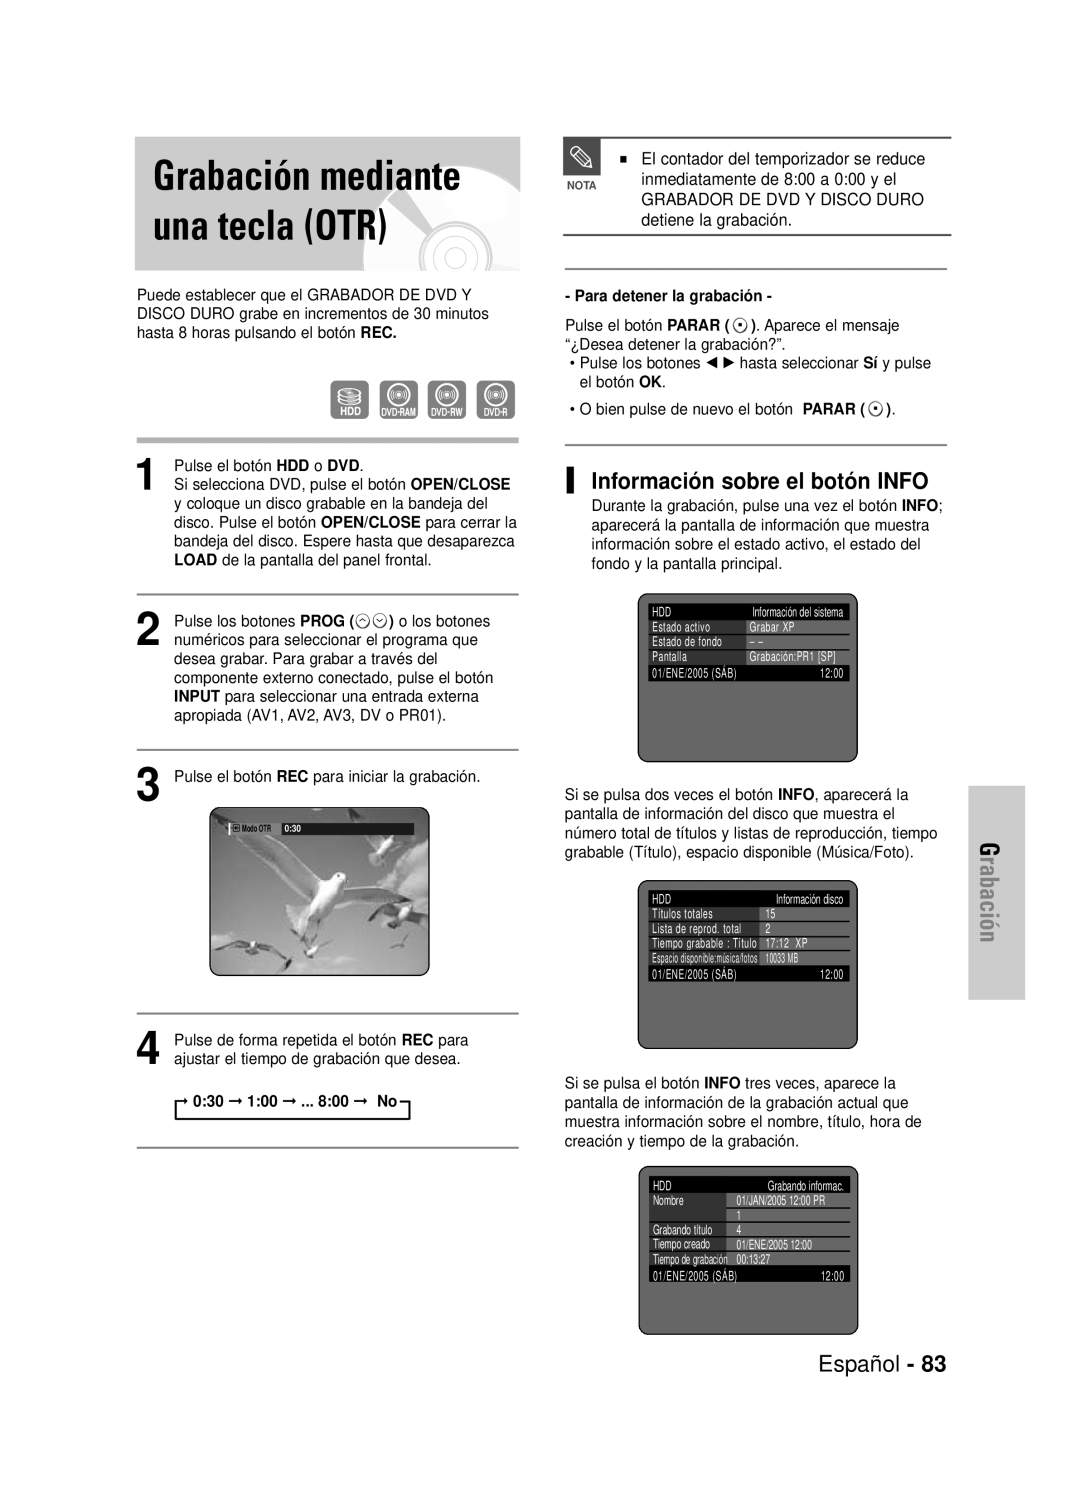 Samsung DVD-HR725/XEU Grabación mediante una tecla OTR, Información sobre el botón INFO, Español, detiene la grabación 